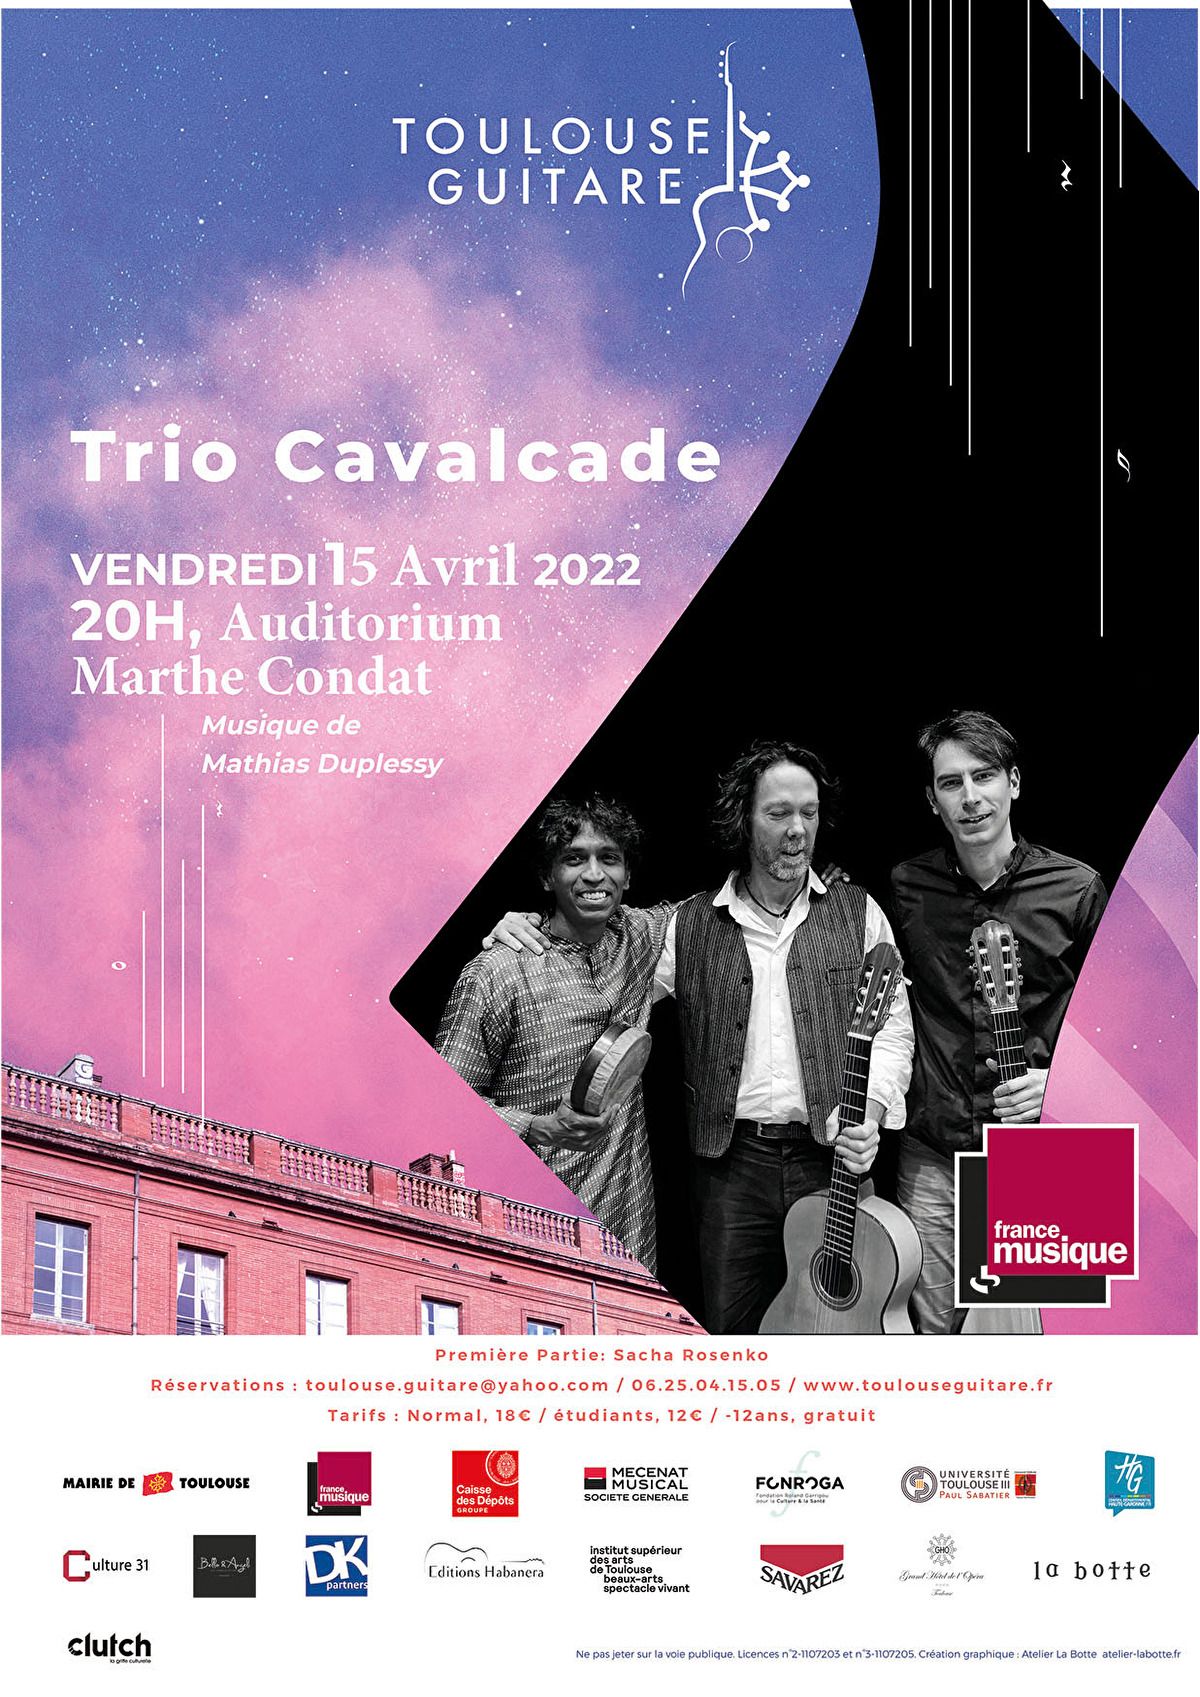 Toulouse Guitare - Trio Cavalcade 2022